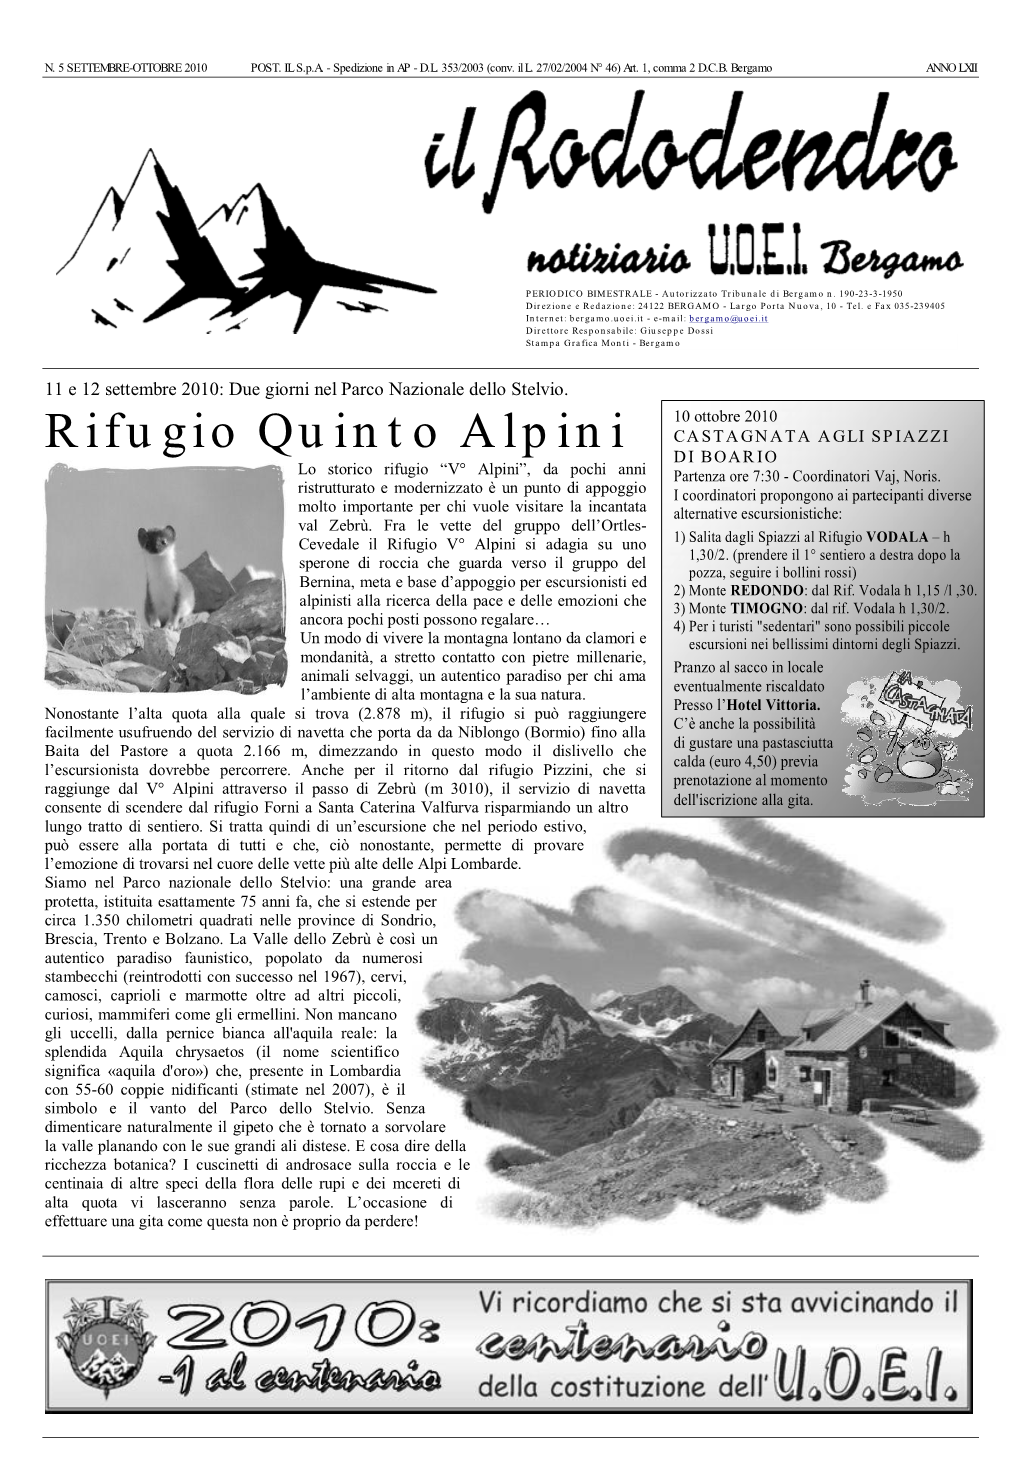 Rifugio Quinto Alpini DI BOARIO Lo Storico Rifugio “V° Alpini”, Da Pochi Anni Partenza Ore 7:30 - Coordinatori Vaj, Noris